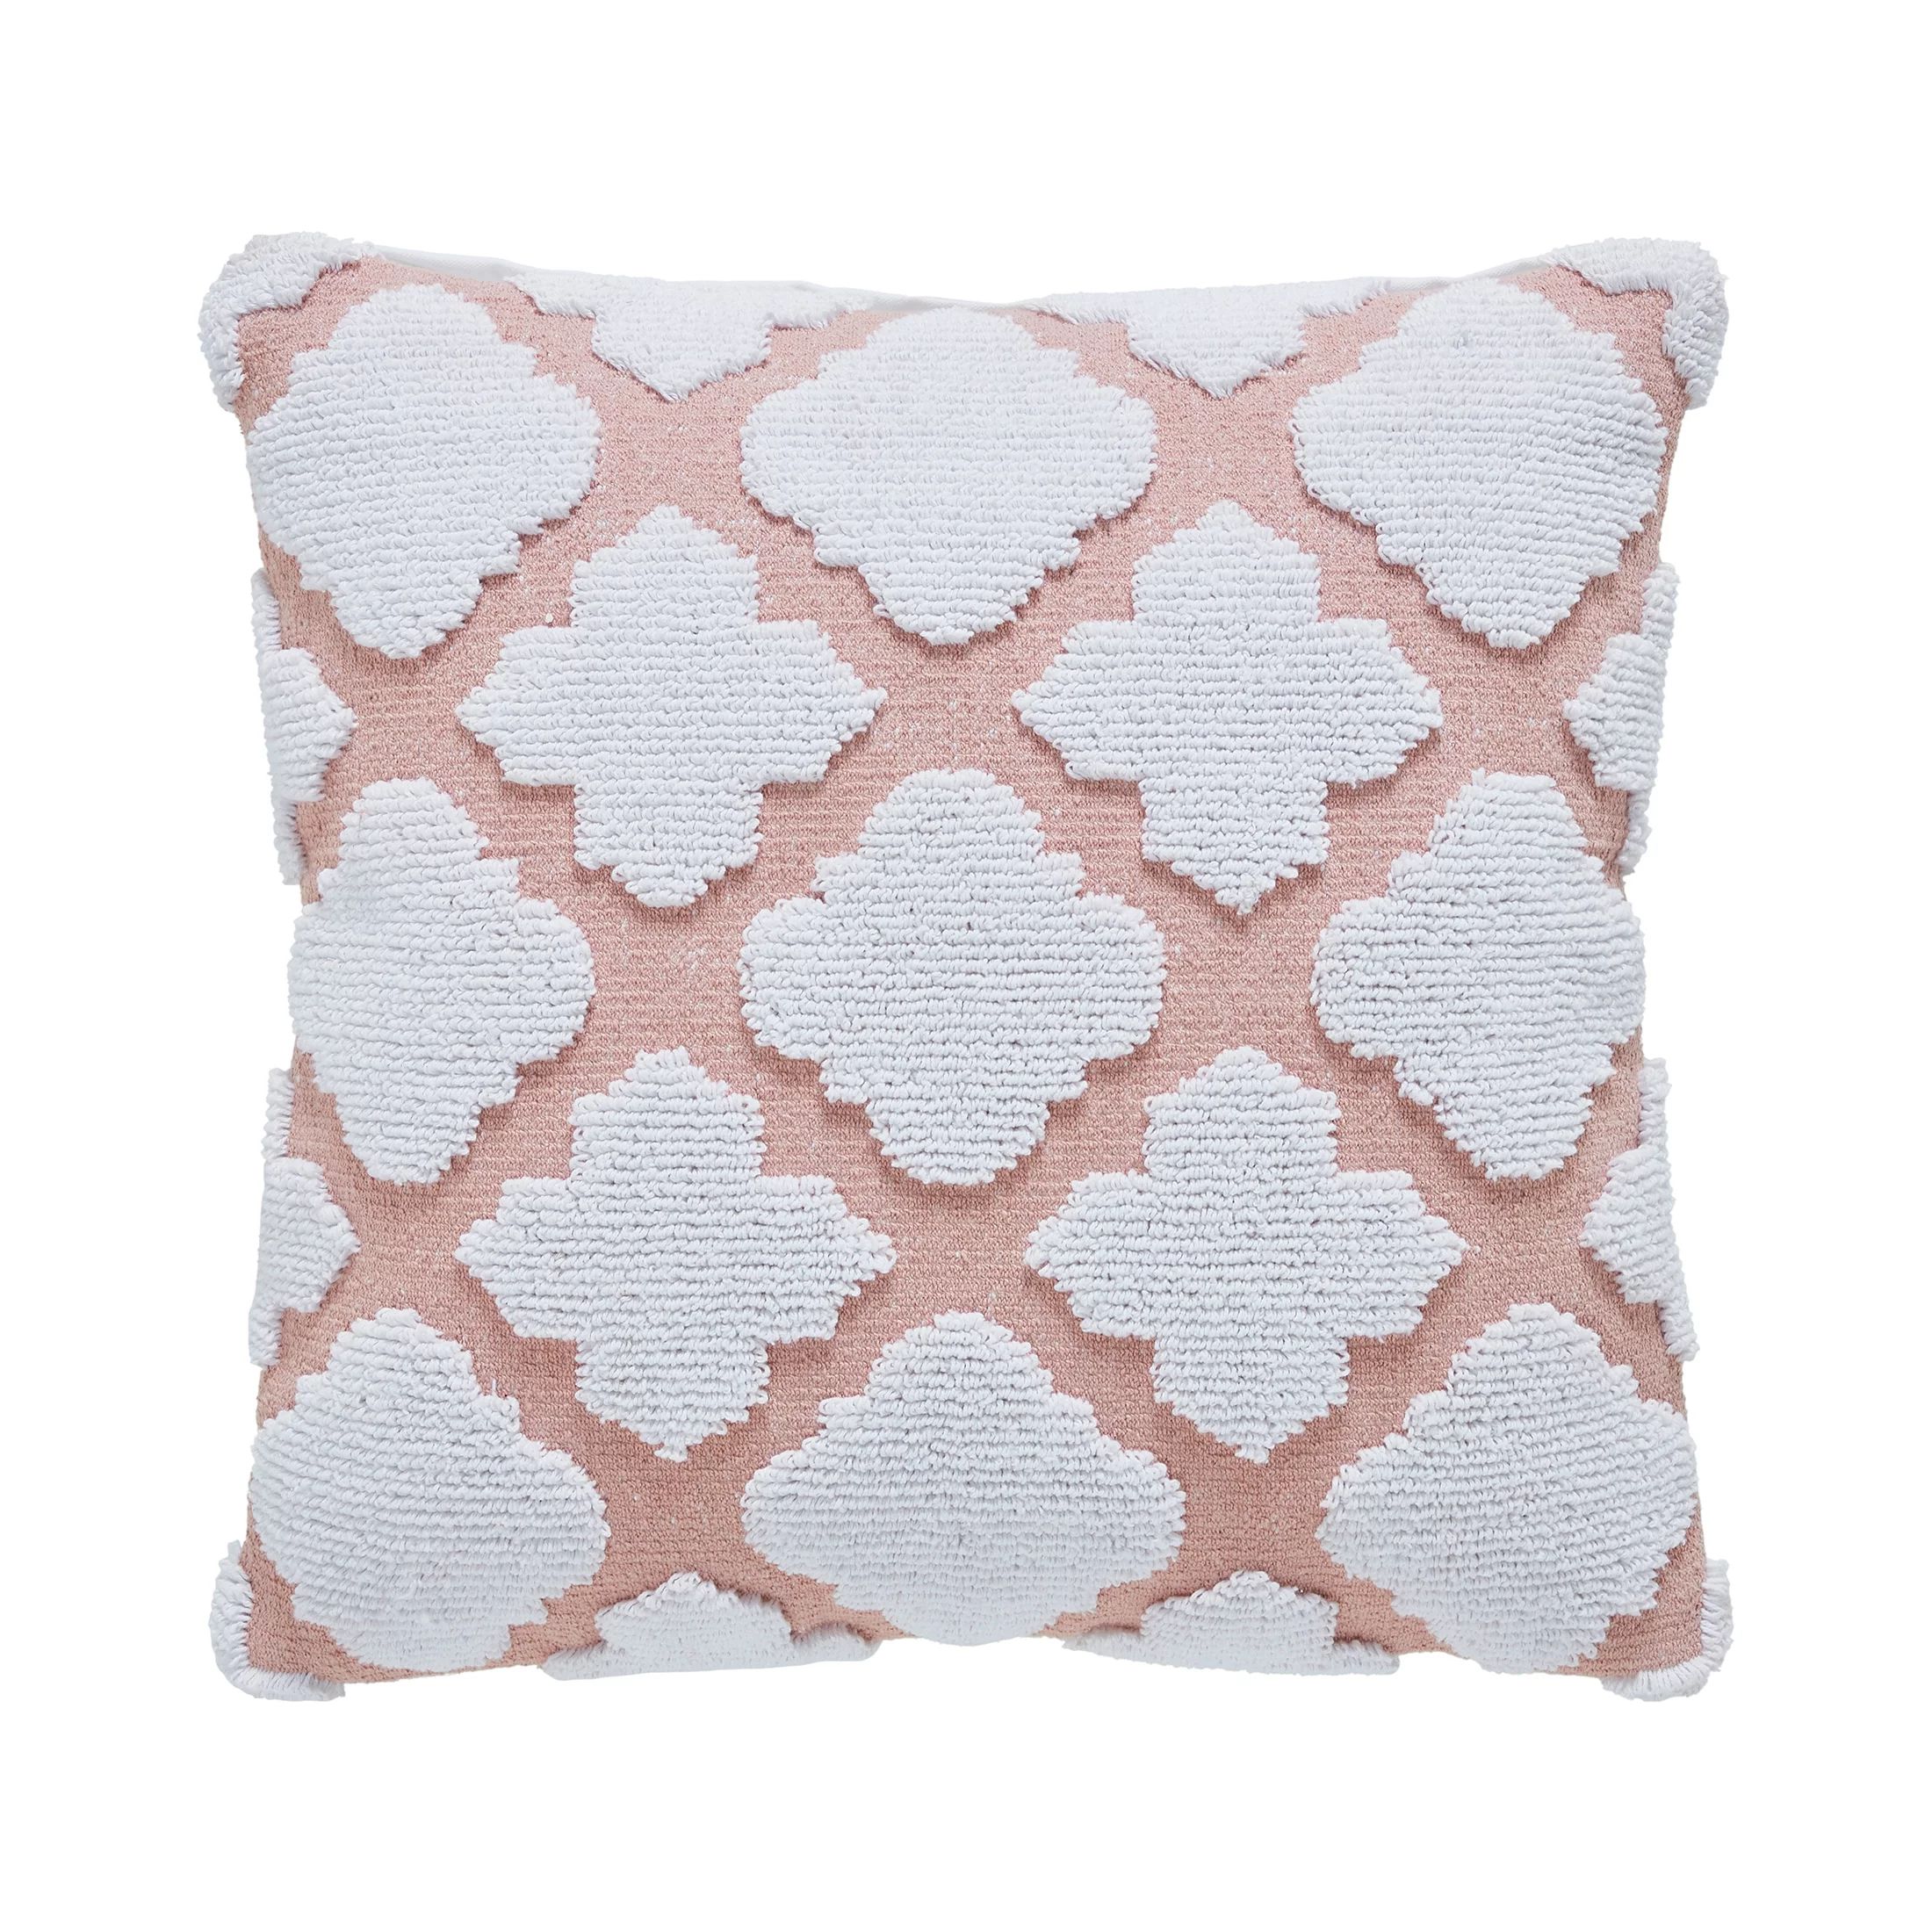 My Texas House Lainey Quatrefoil Cotton-Terry Decorative Pillow Cover, 22" x 22", Blush | Walmart (US)